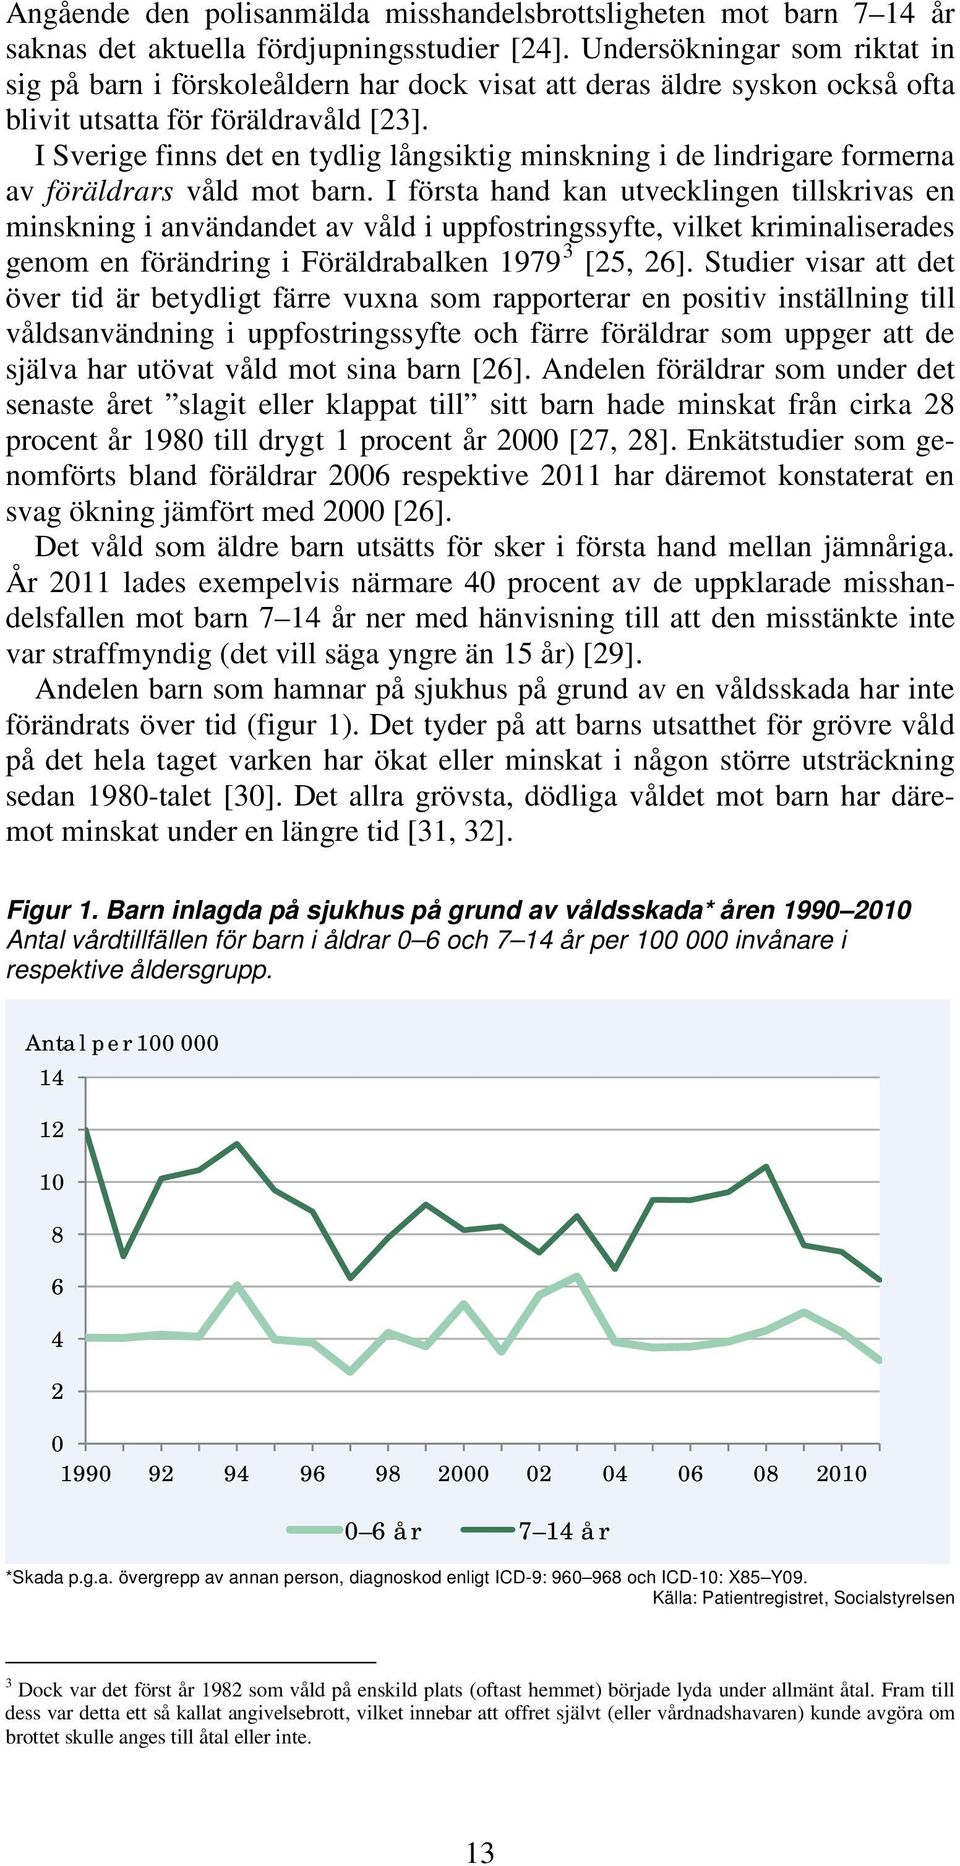 I Sverige finns det en tydlig långsiktig minskning i de lindrigare formerna av föräldrars våld mot barn.